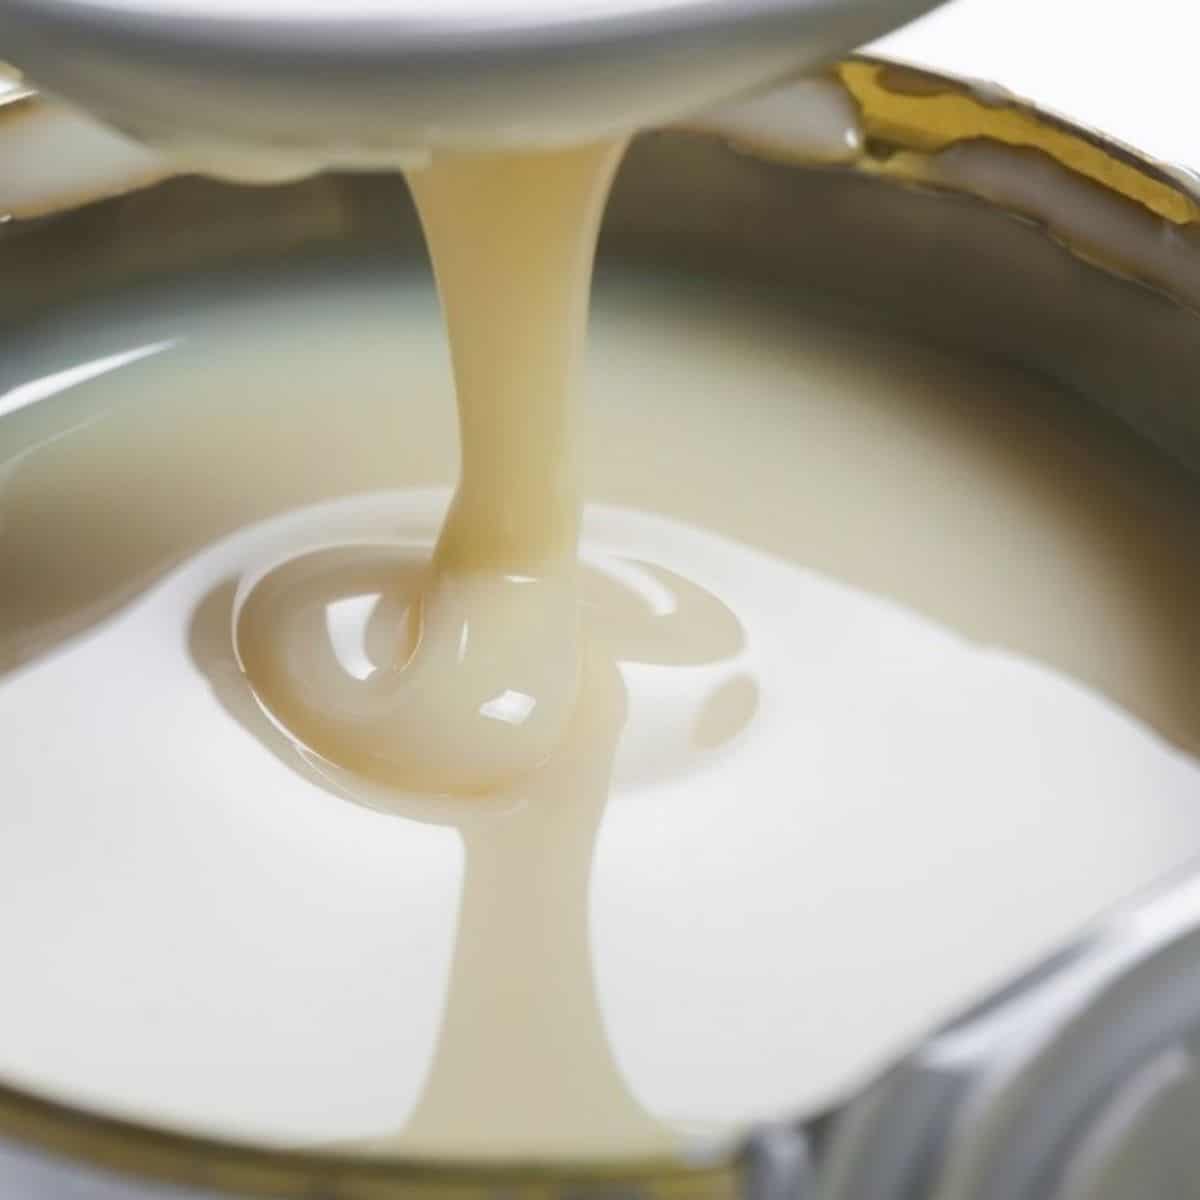 Meilleur substitut de lait concentré sucré et alternatives à utiliser dans la cuisson et la cuisson.